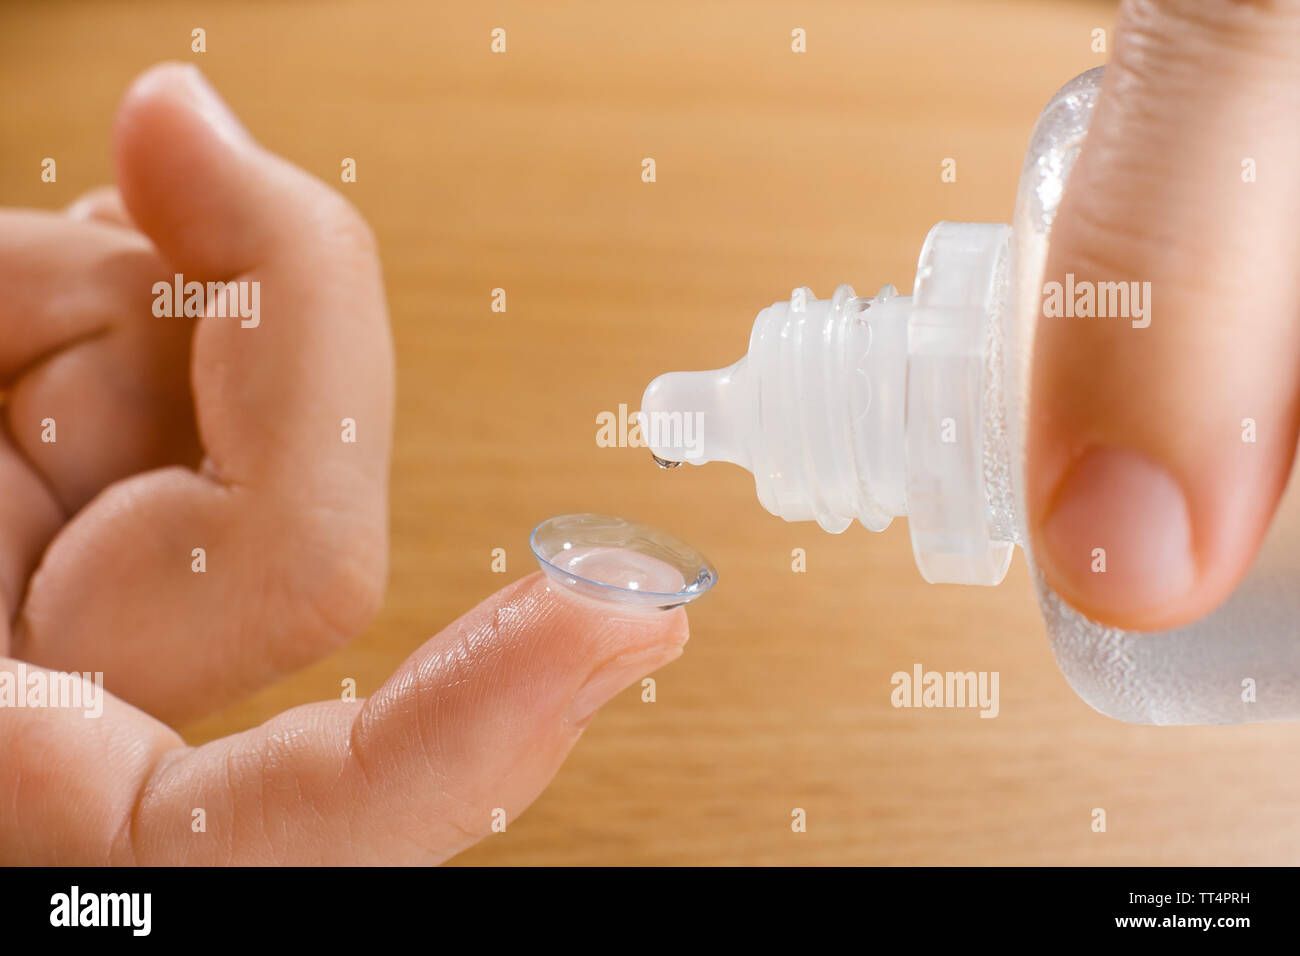 Hände von Frau waschen Kontaktlinse mit Lösung, Nahaufnahme Stockfoto